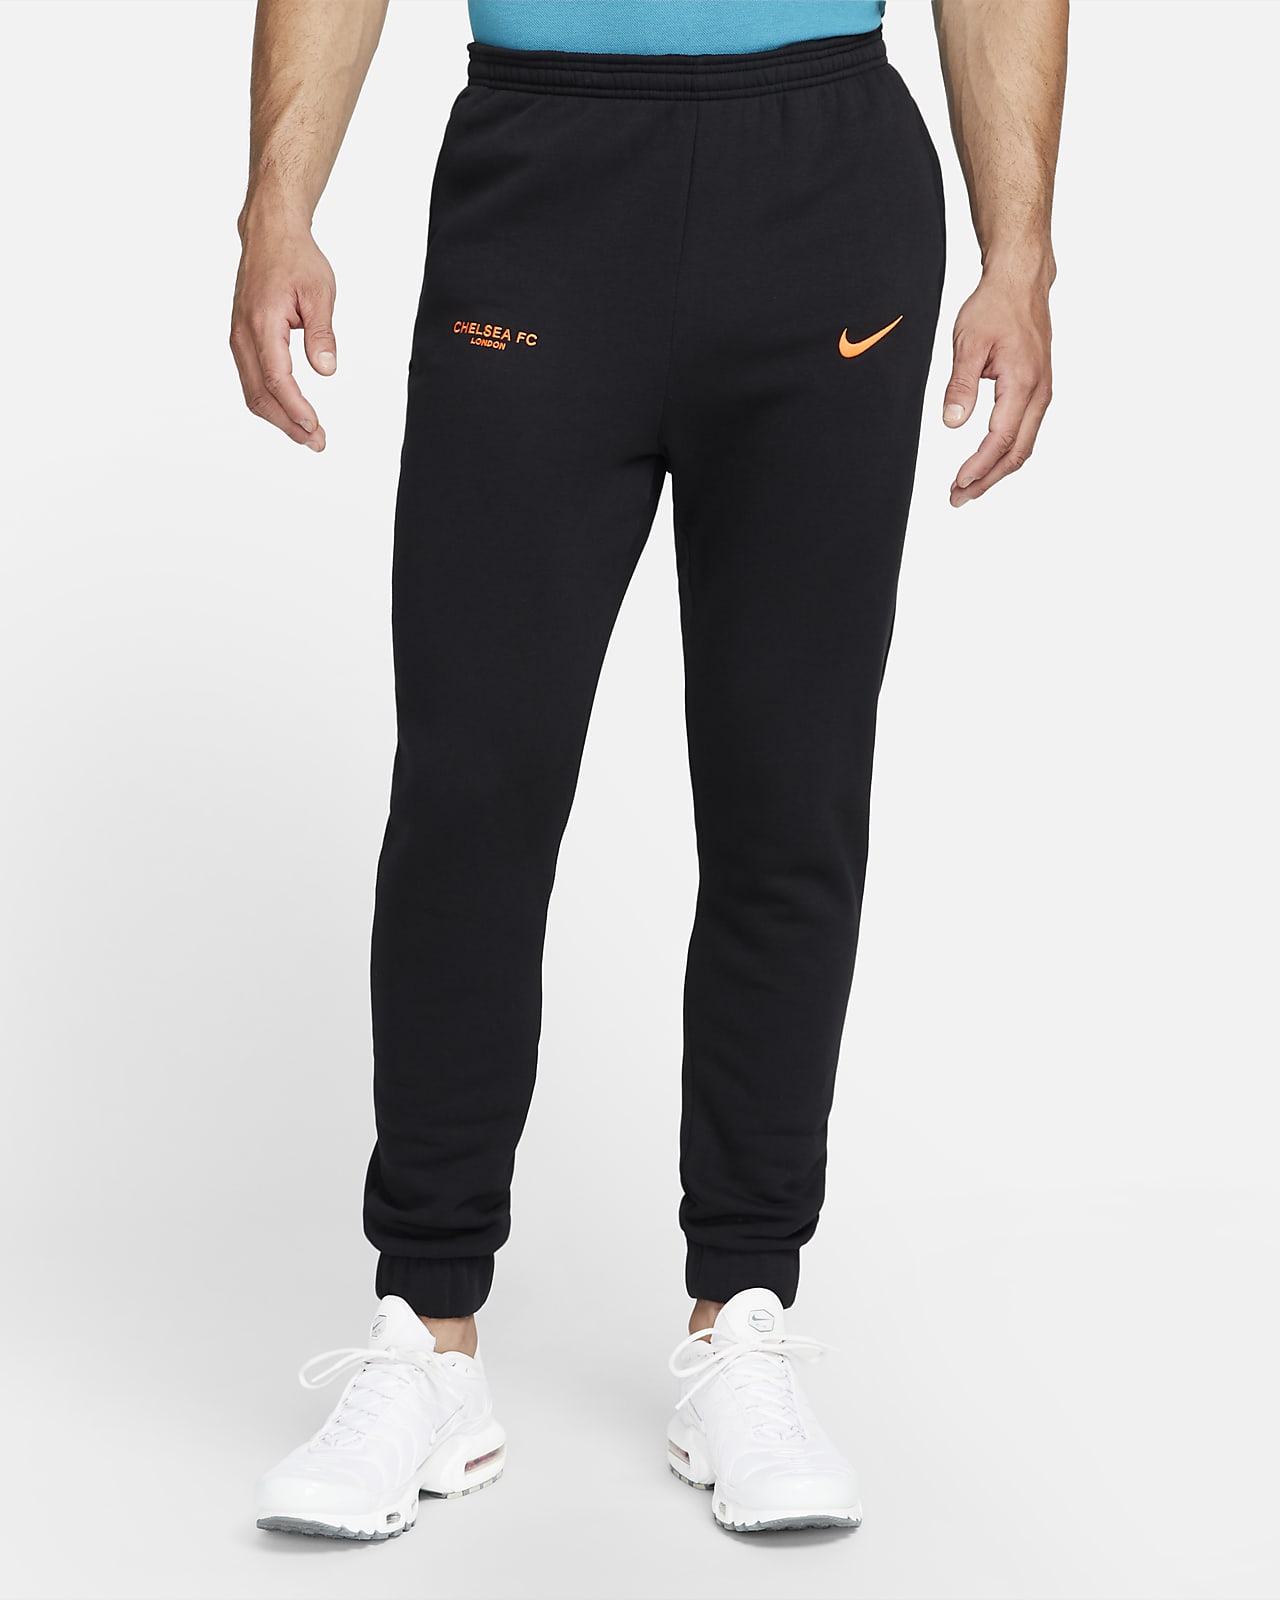 Fleece Football Pants. Nike LU